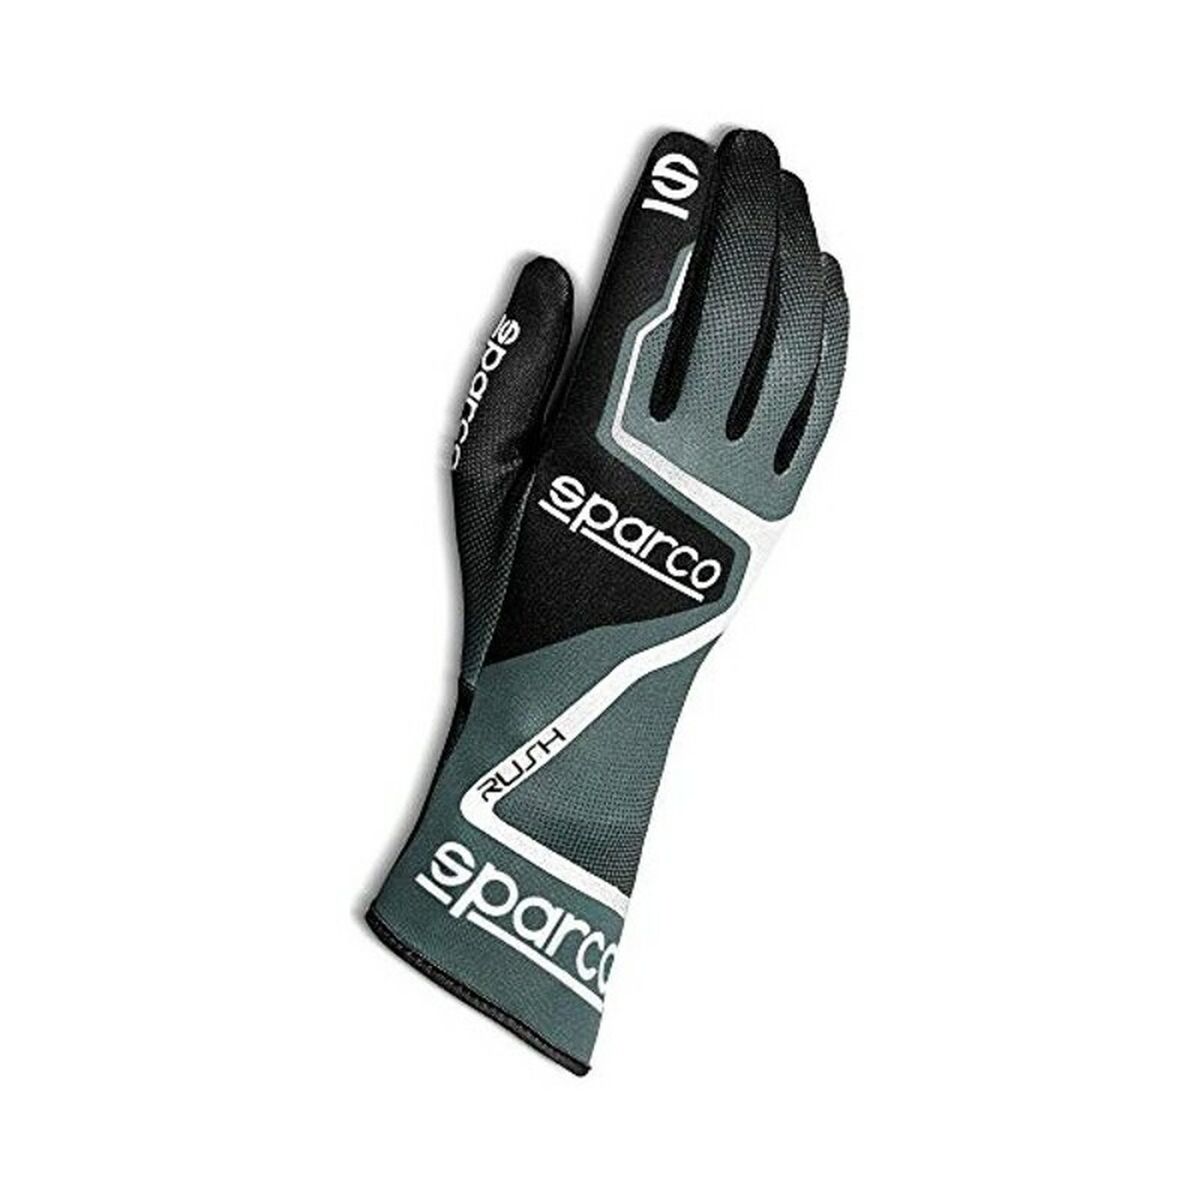 Osta tuote Karting Gloves Sparco 00255608GRNR verkkokaupastamme Korhone: Urheilu & Vapaa-aika 20% alennuksella koodilla VIIKONLOPPU